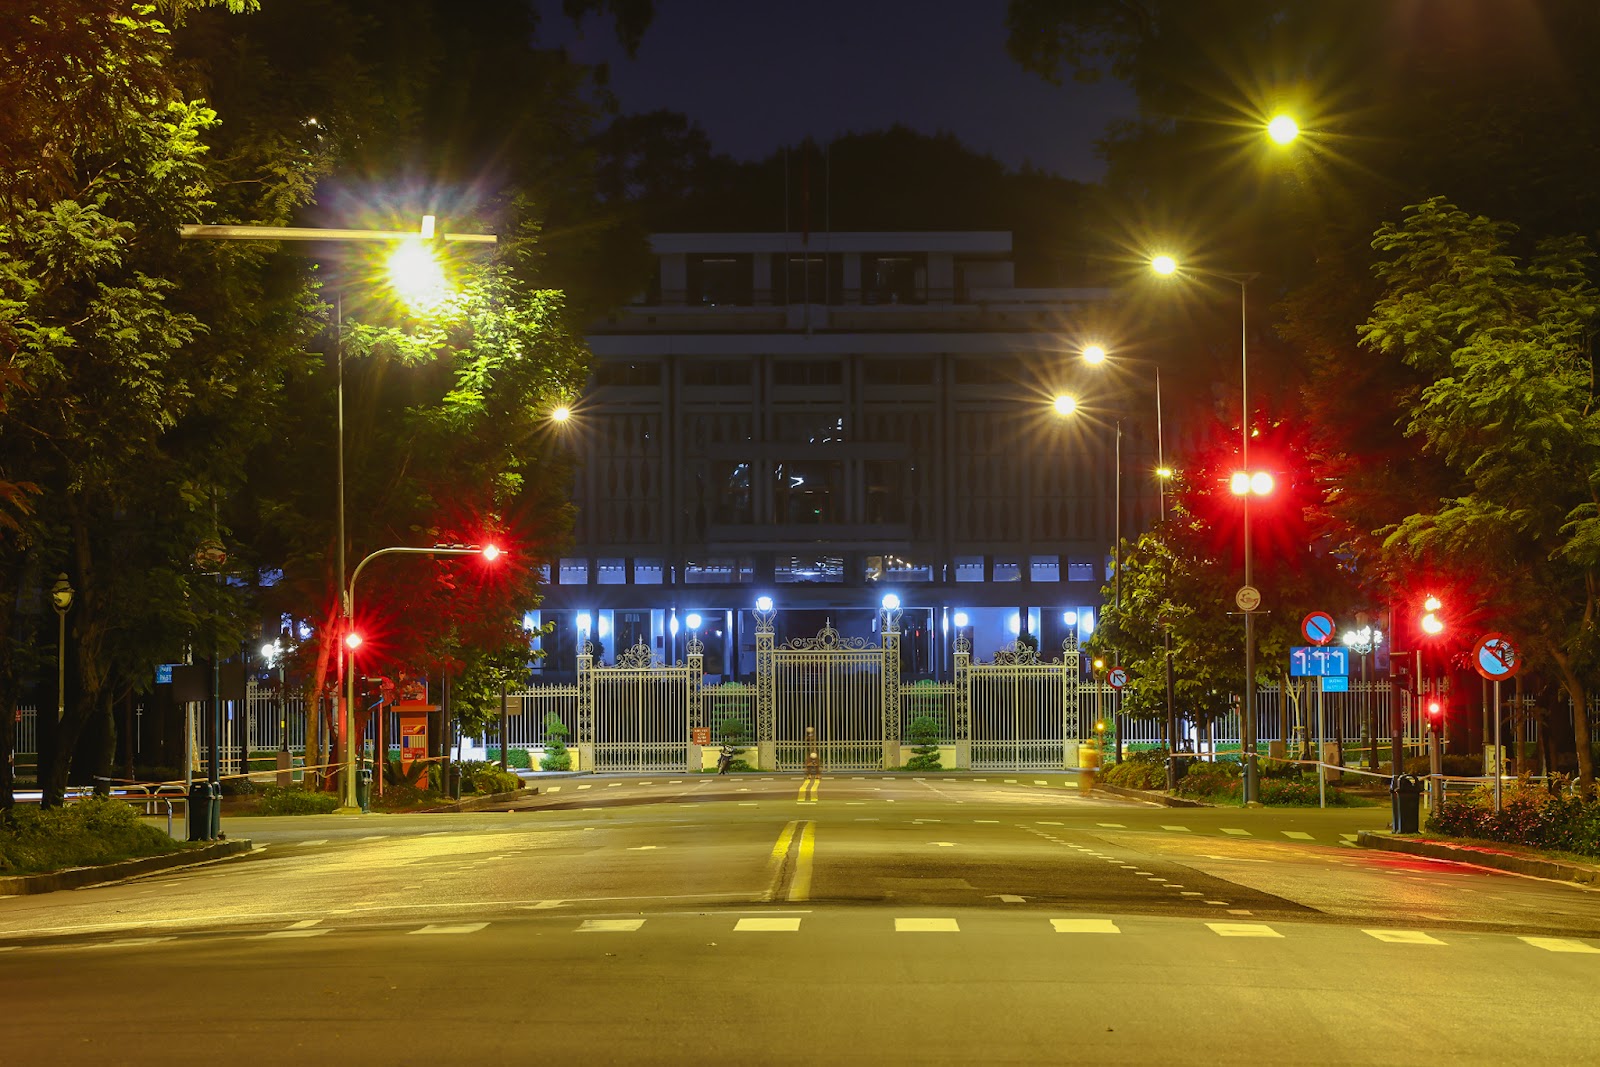 “Bổ túc” đường phố Sài Gòn lúc lên đèn dành cho người ở nhà lâu quá - 6